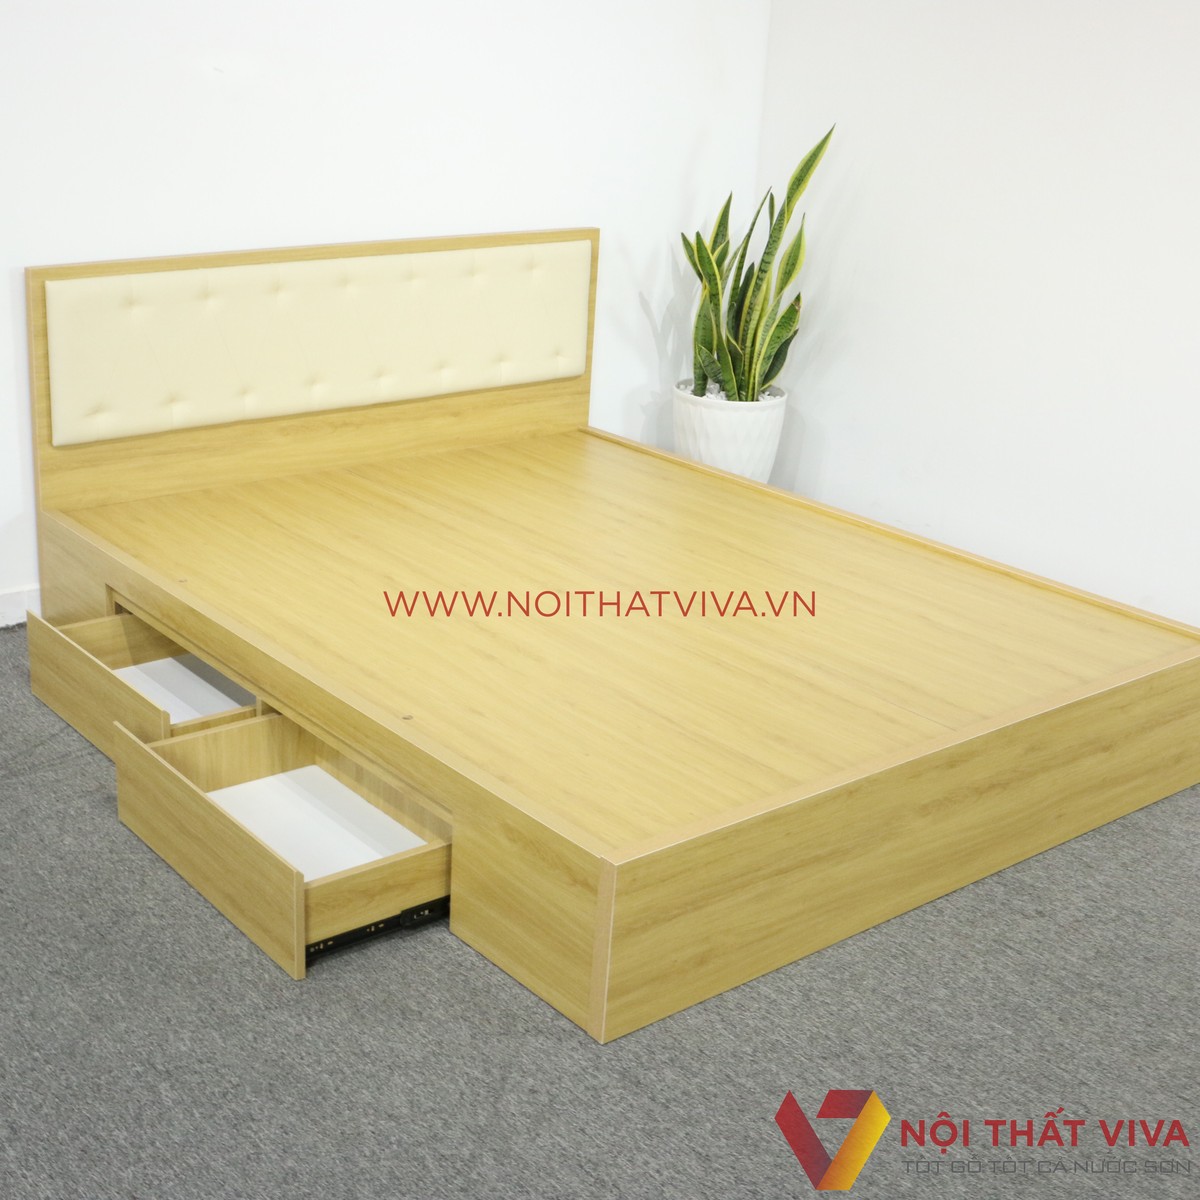 Săn trọn bộ mẫu giường ngủ đẹp giá rẻ từ 3, 5, 7 đến 10 triệu tại Nội Thất Viva